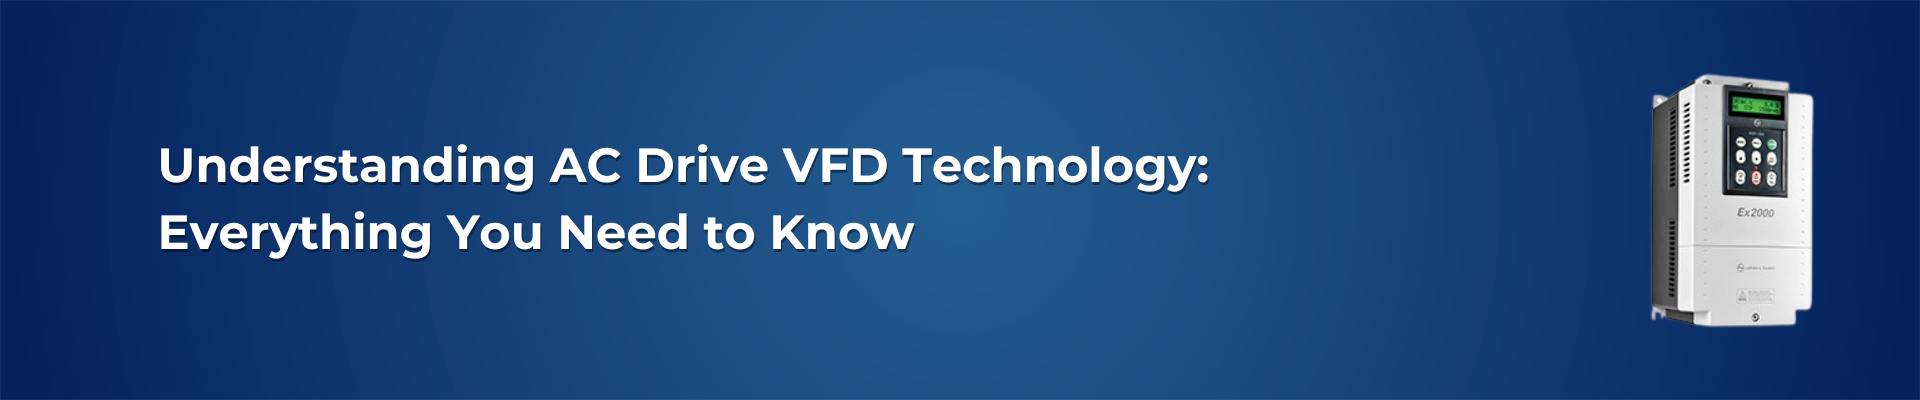 Understanding AC Drive VFD Technology